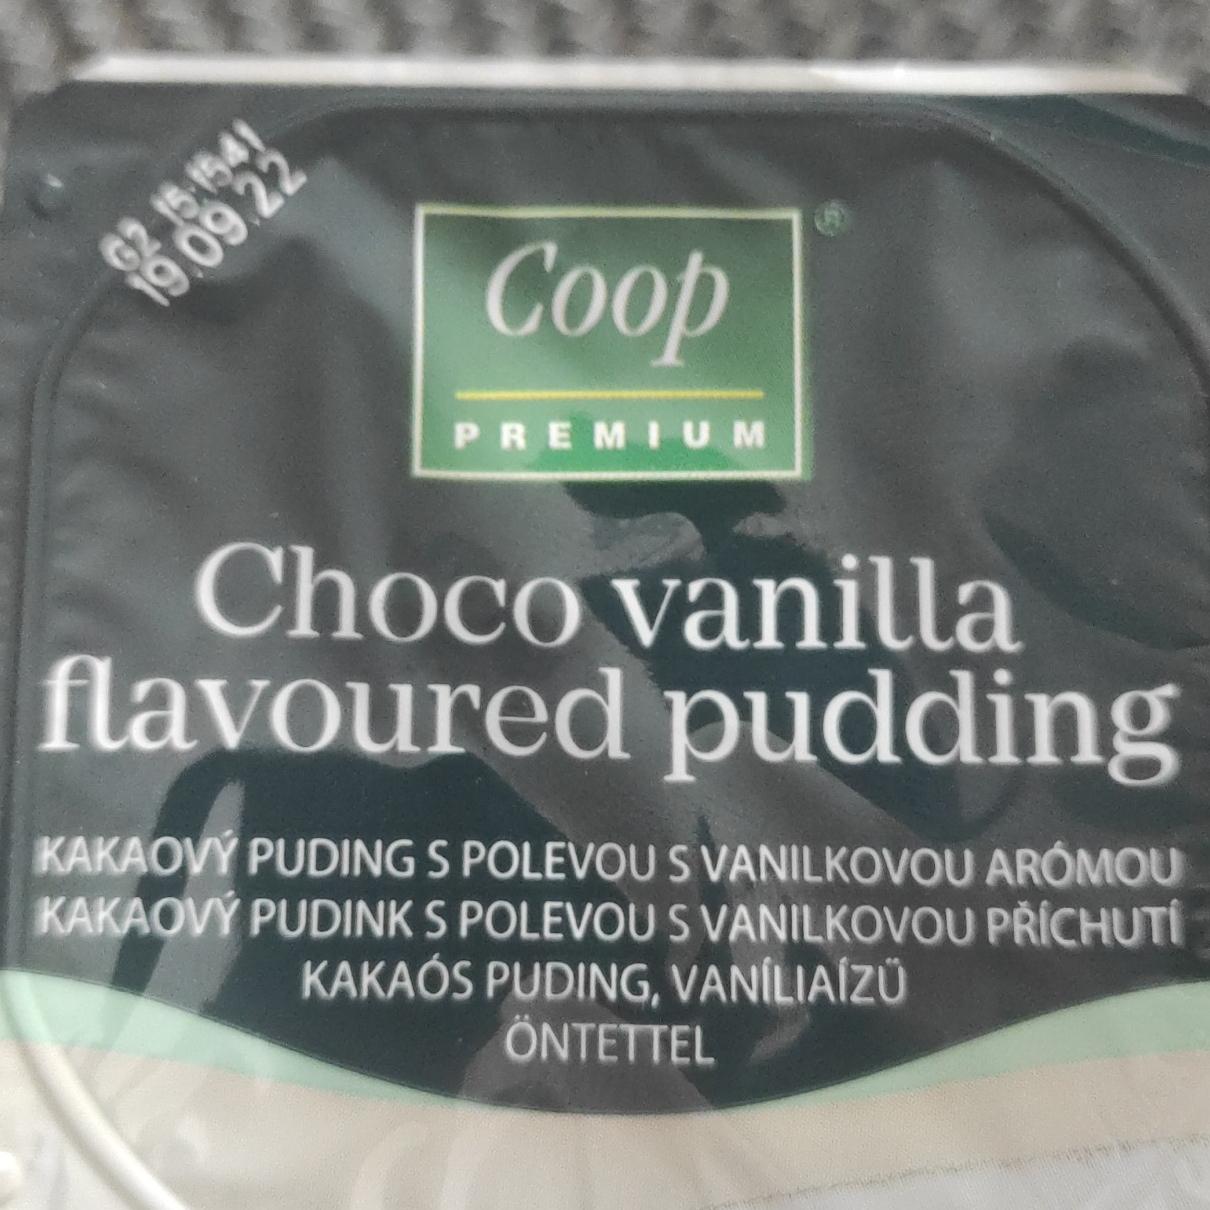 Fotografie - Choco vanilla flavoured pudding Coop Premium